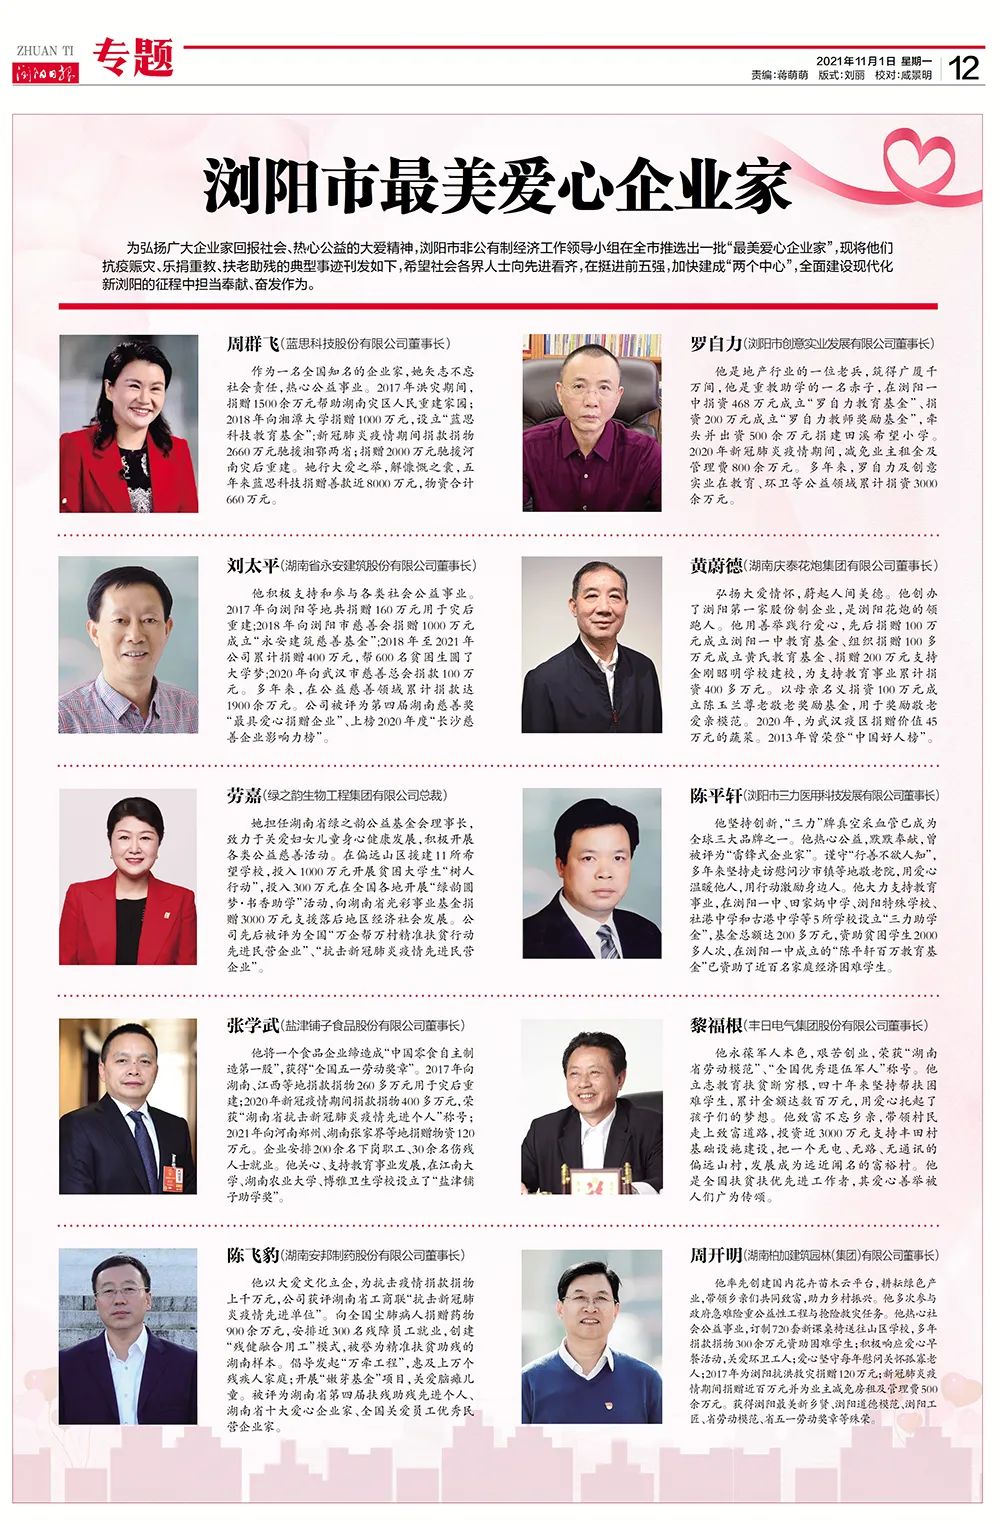 绿之韵集团董事、总裁劳嘉获评浏阳市“最美爱心企业家”称号